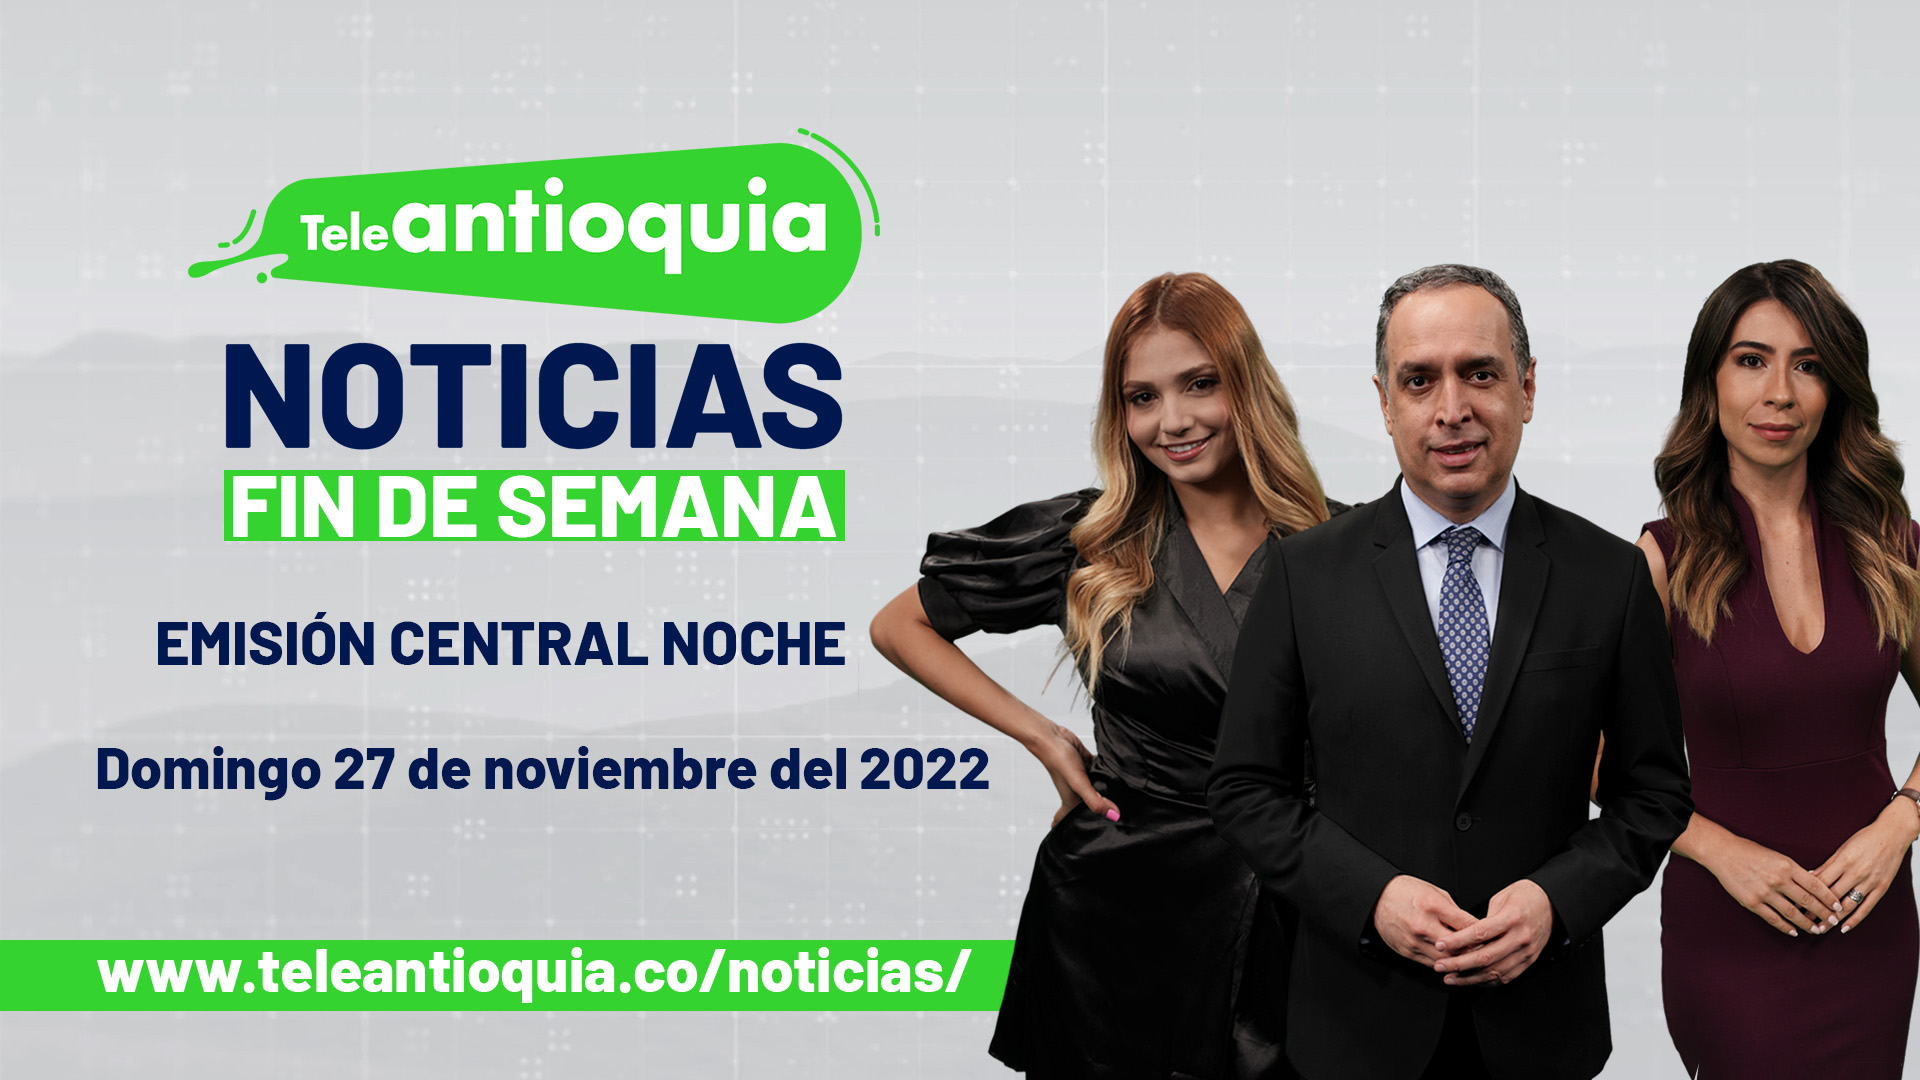 Teleantioquia Noticias - sábado 26 de noviembre del 2022 - 7:00 p.m.